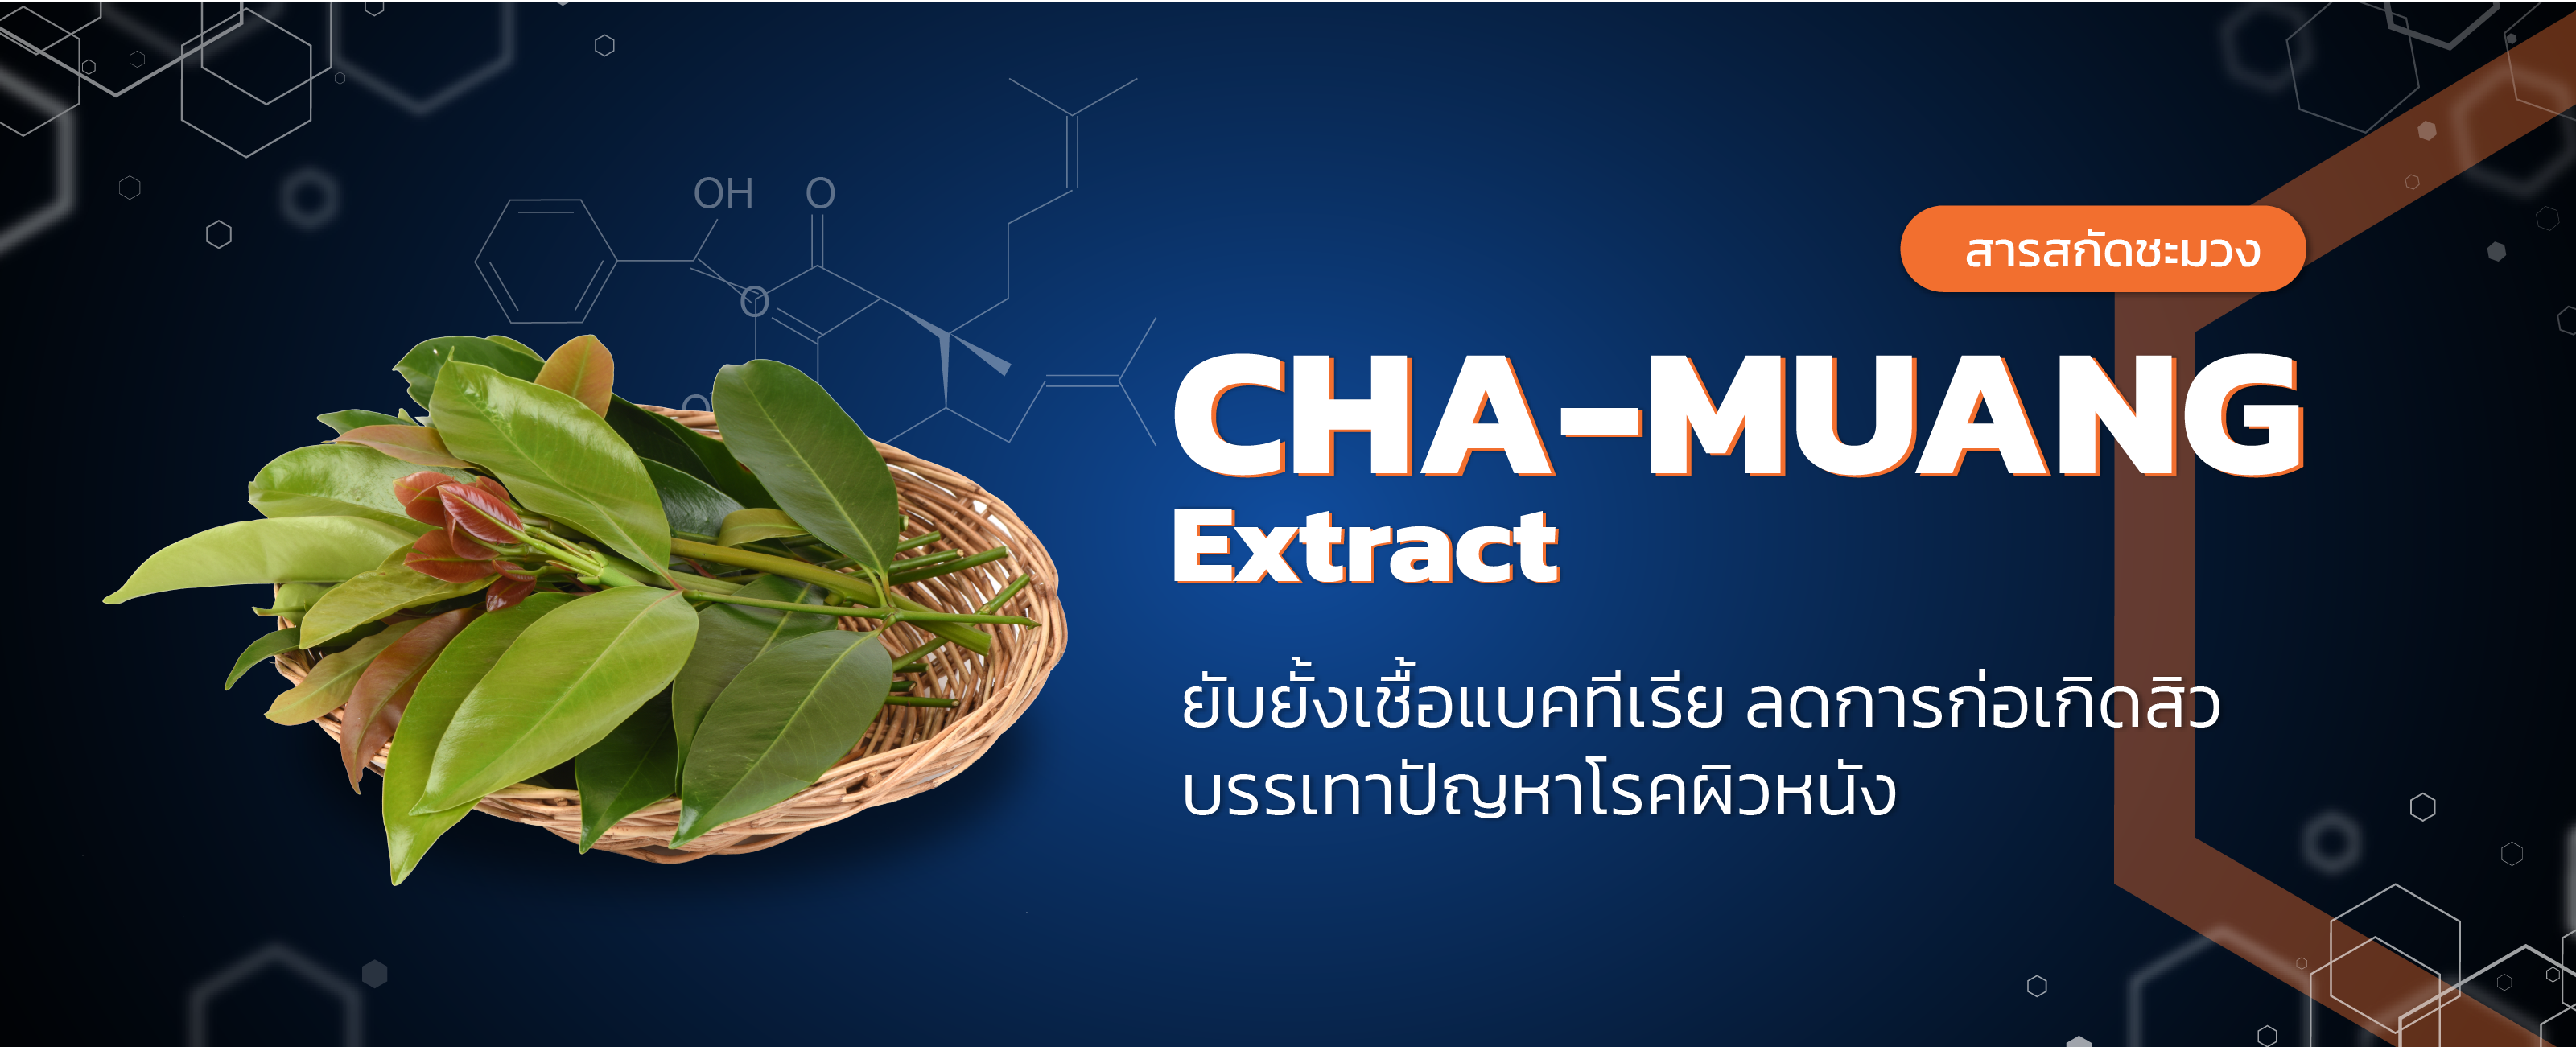 สารสกัดจากชะมวง (Cha-Muang Extract)